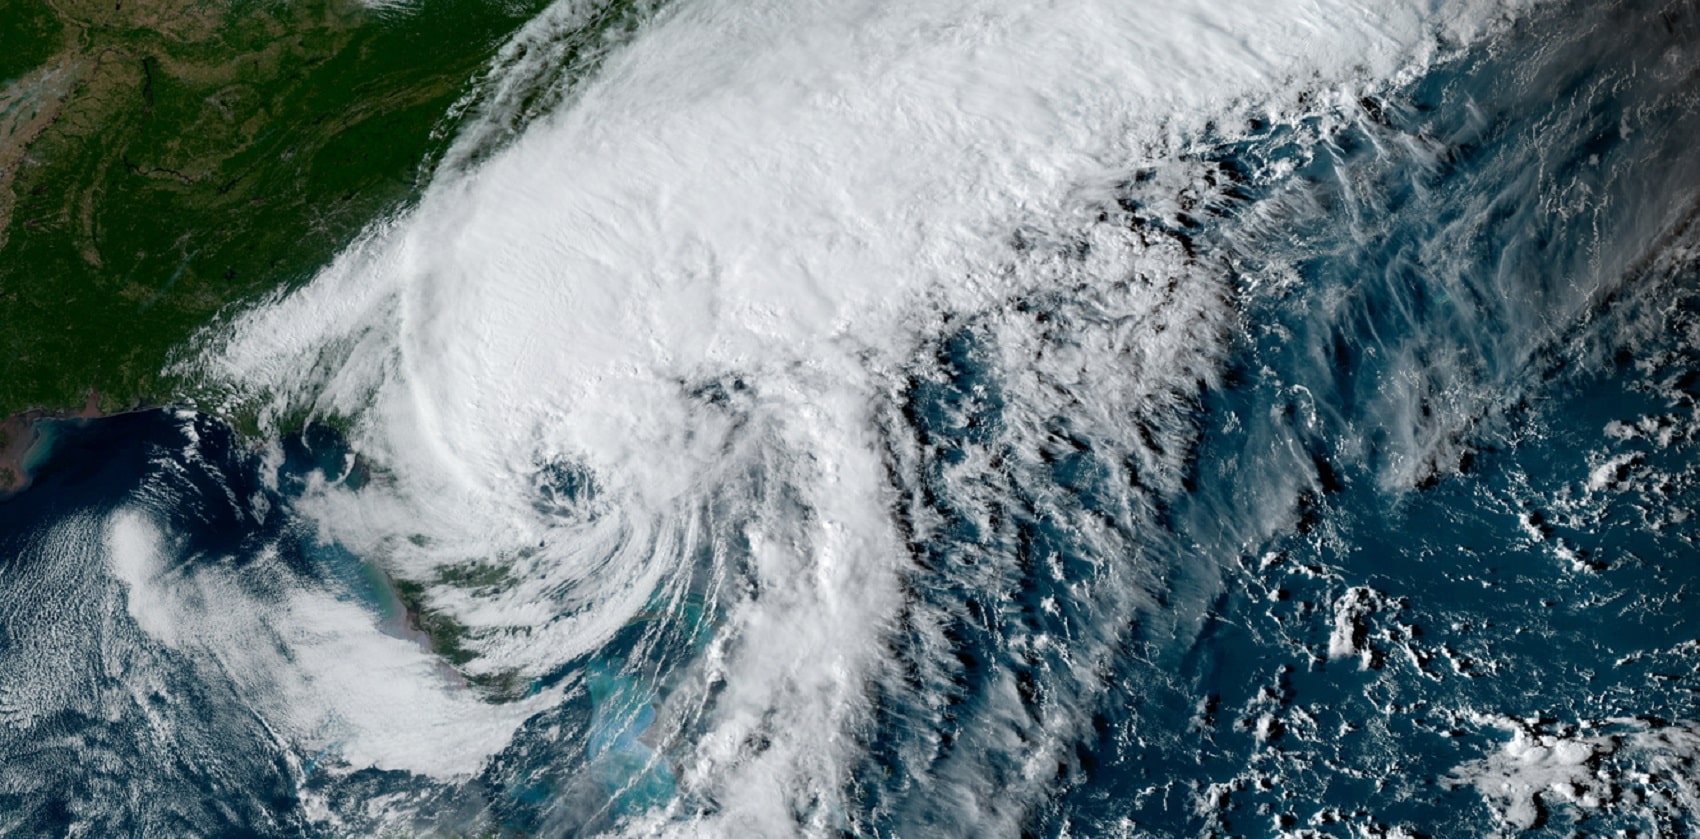 El huracán cuenta con vientos continuos de hasta 120 kilómetros por hora y condiciones "potencialmente mortales" que involucran "inundaciones, marejadas ciclónicas y fuertes ráfagas". Fuente: Regional and Mesoscale Meteorology Branch